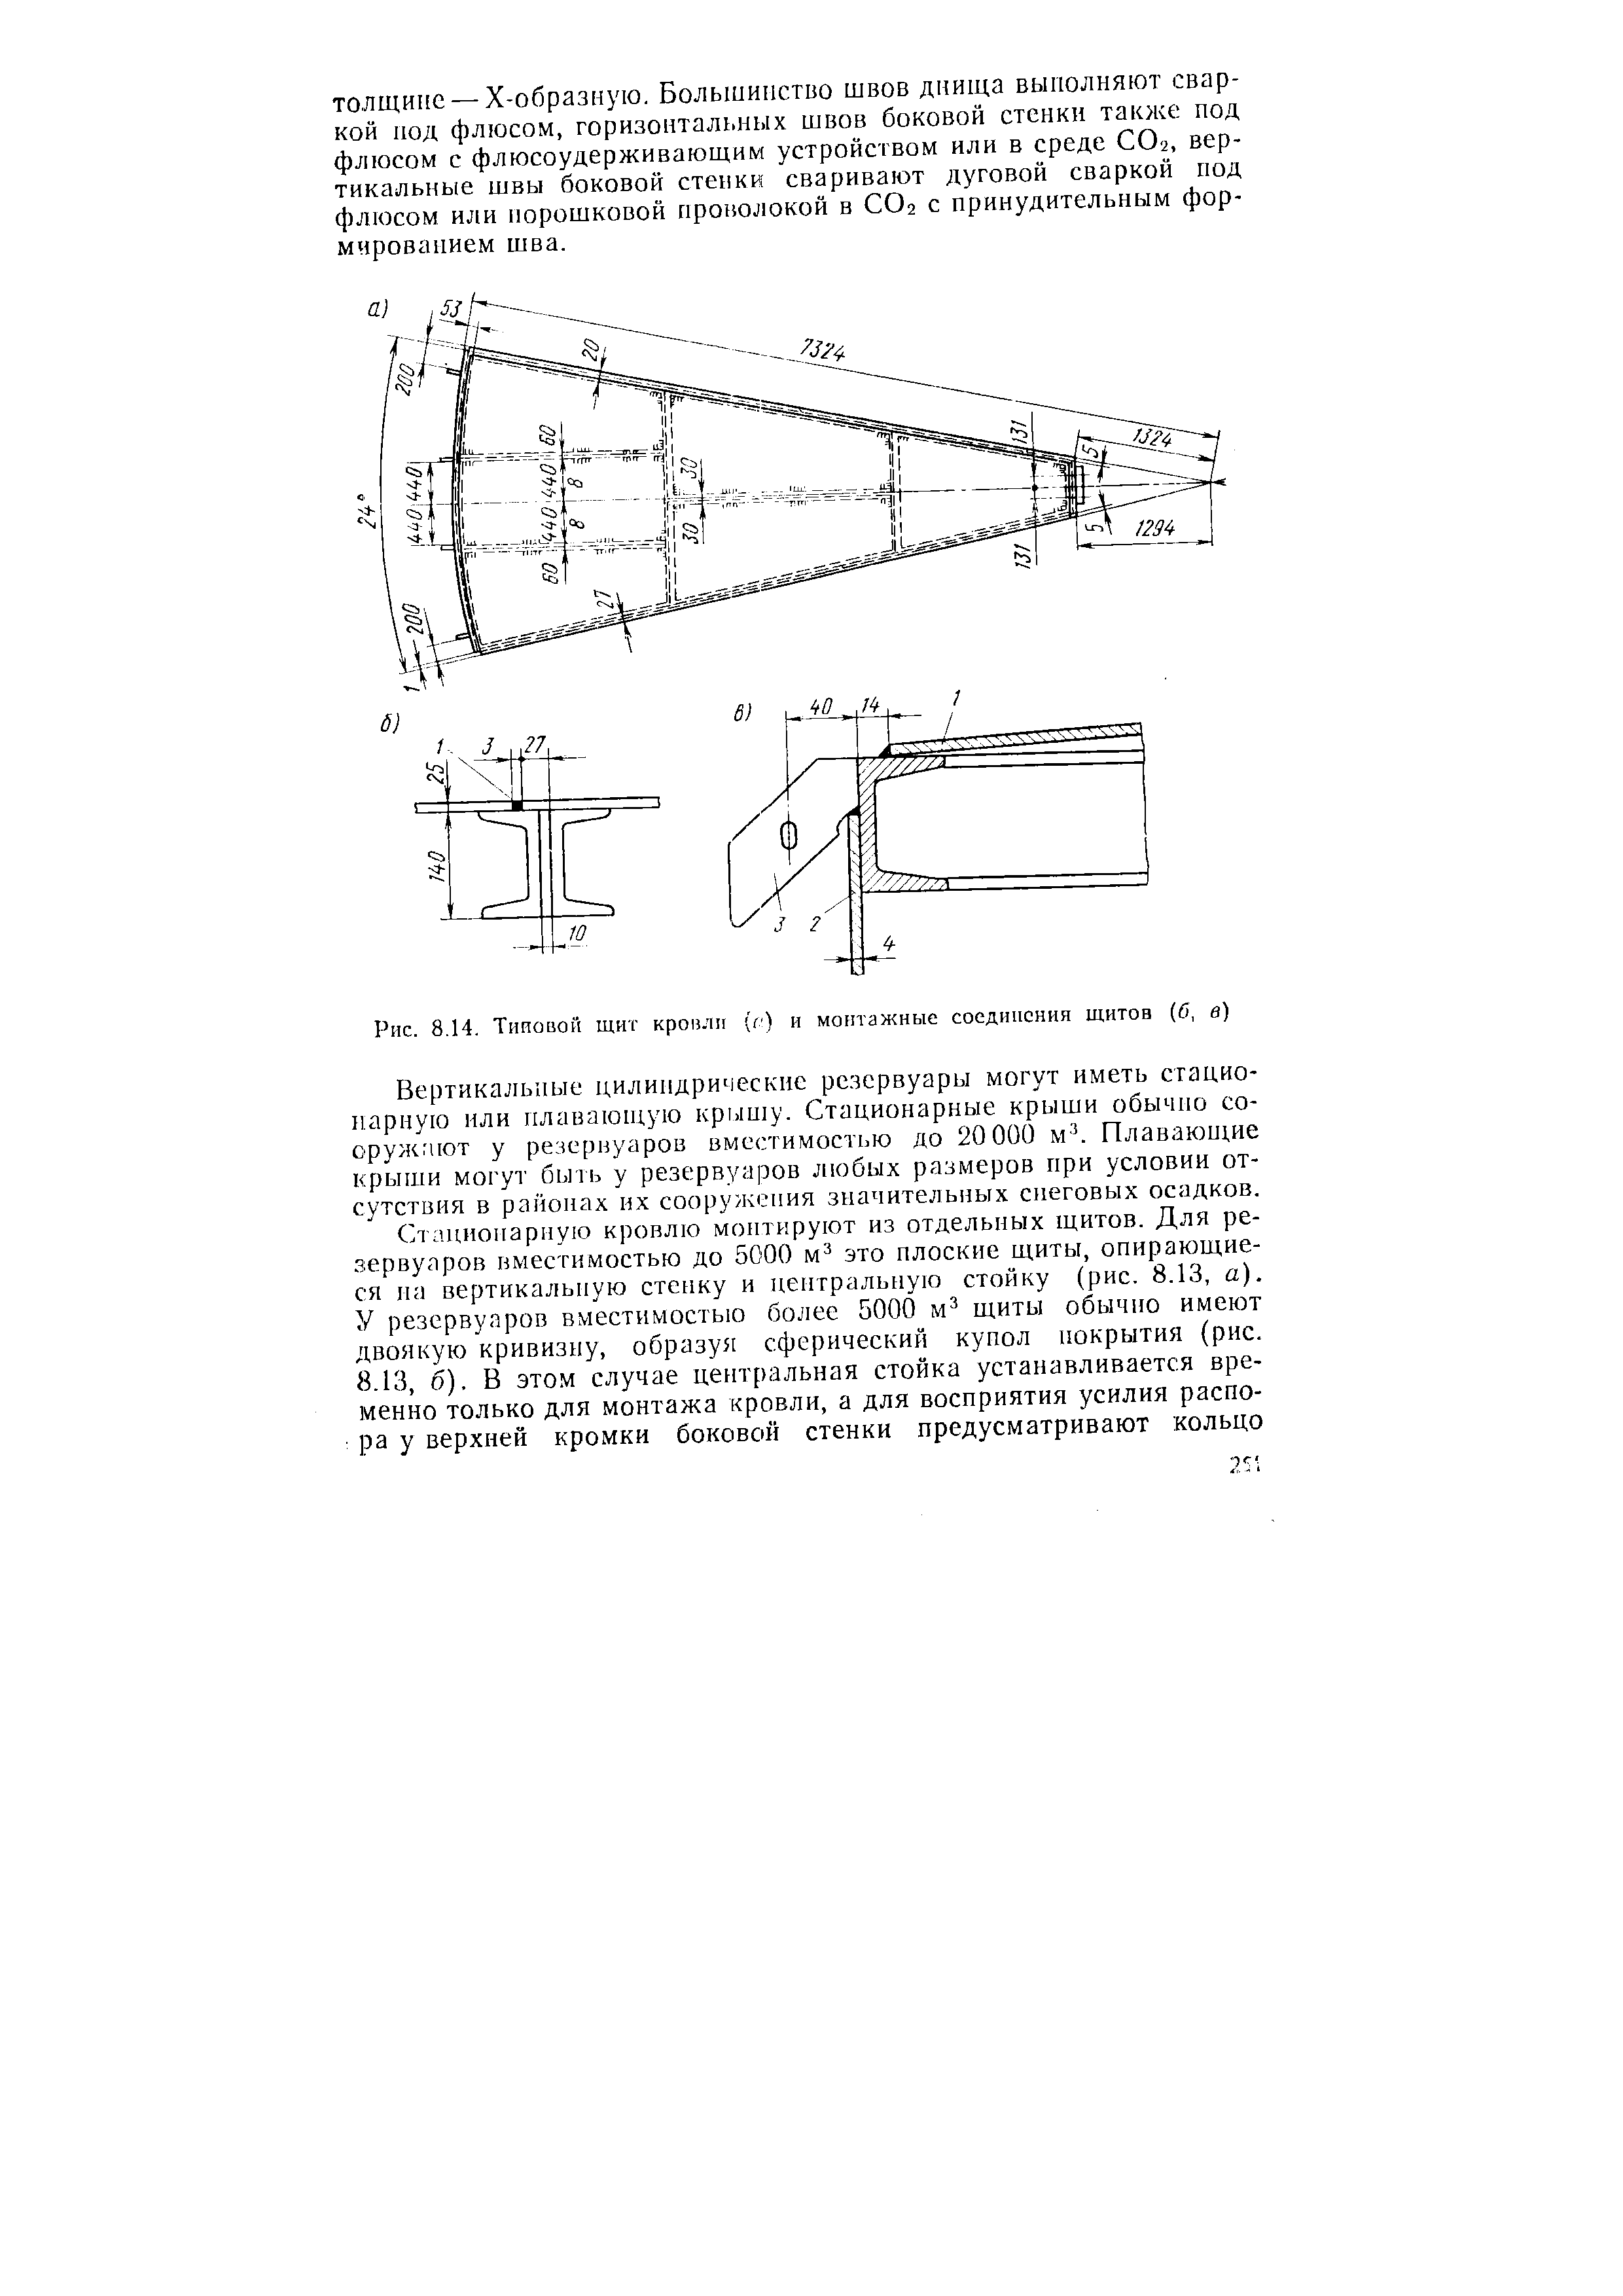 Рис. 8.14. Типовой щит кроили (г) и монтажные соединения щитов (б, в)
